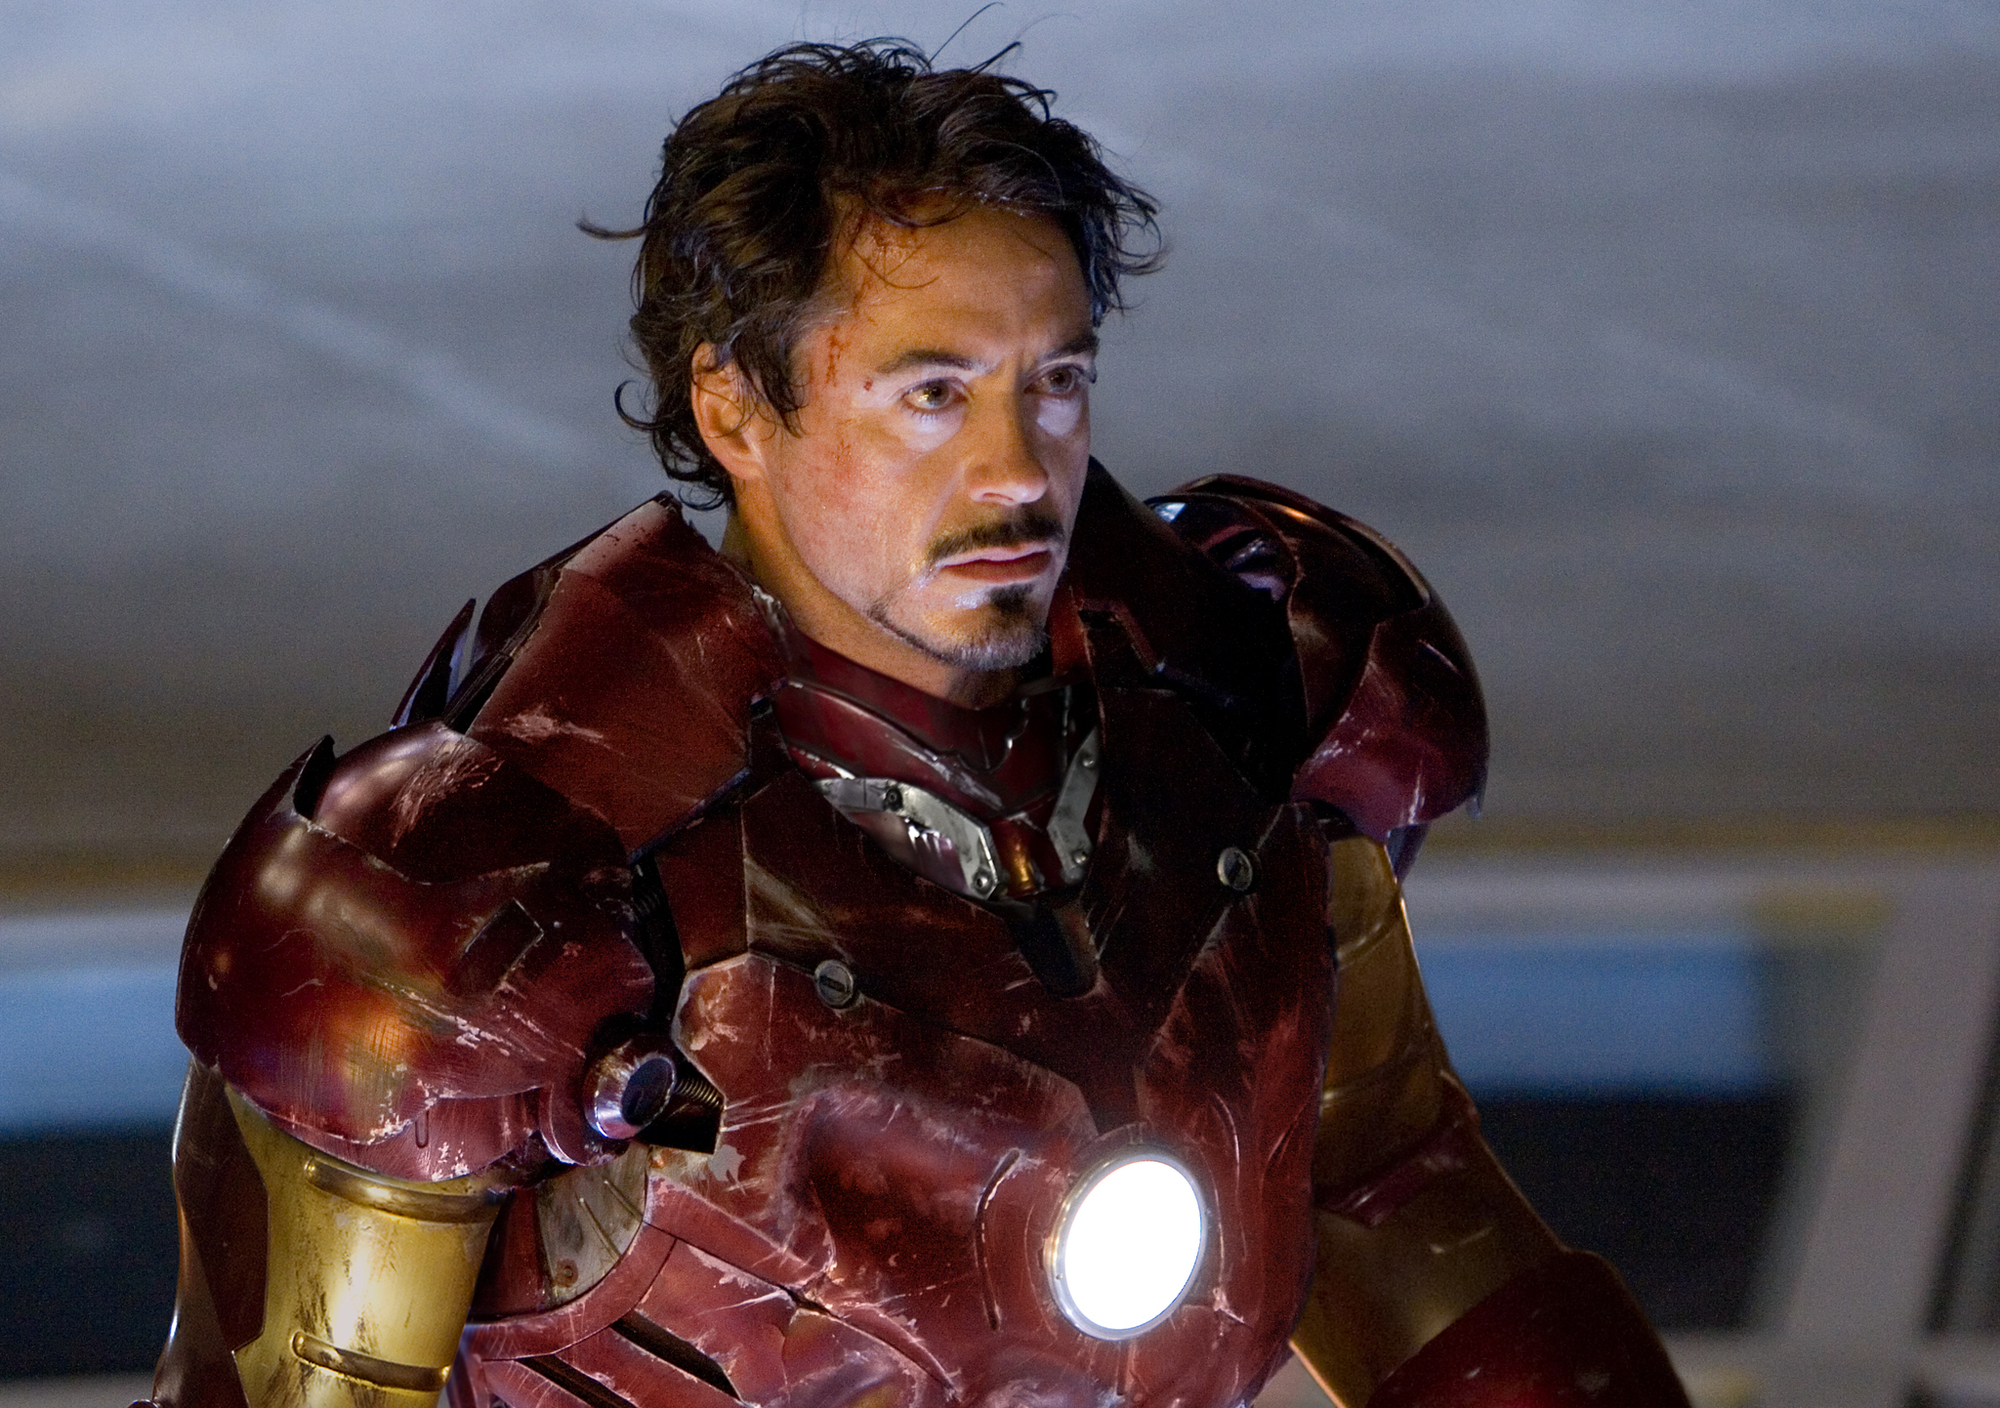 Iron Man: Robert Downey Jr. by se k roli vrátil s radostí | Fandíme filmu